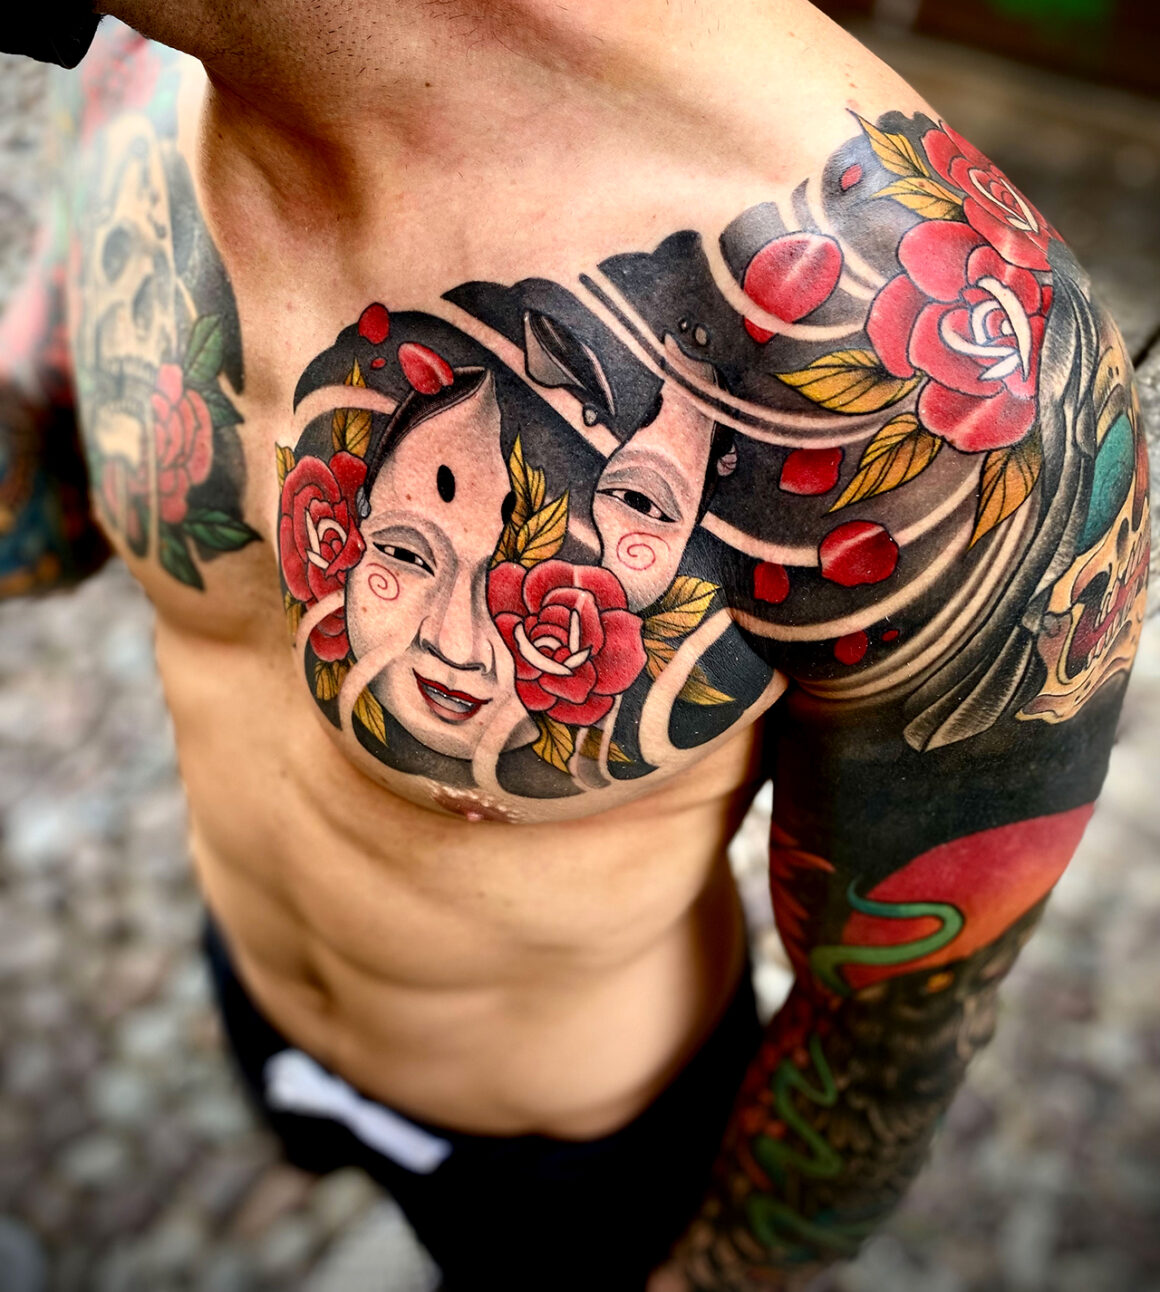 Tattoo by Alex Toniato, @alextoniato